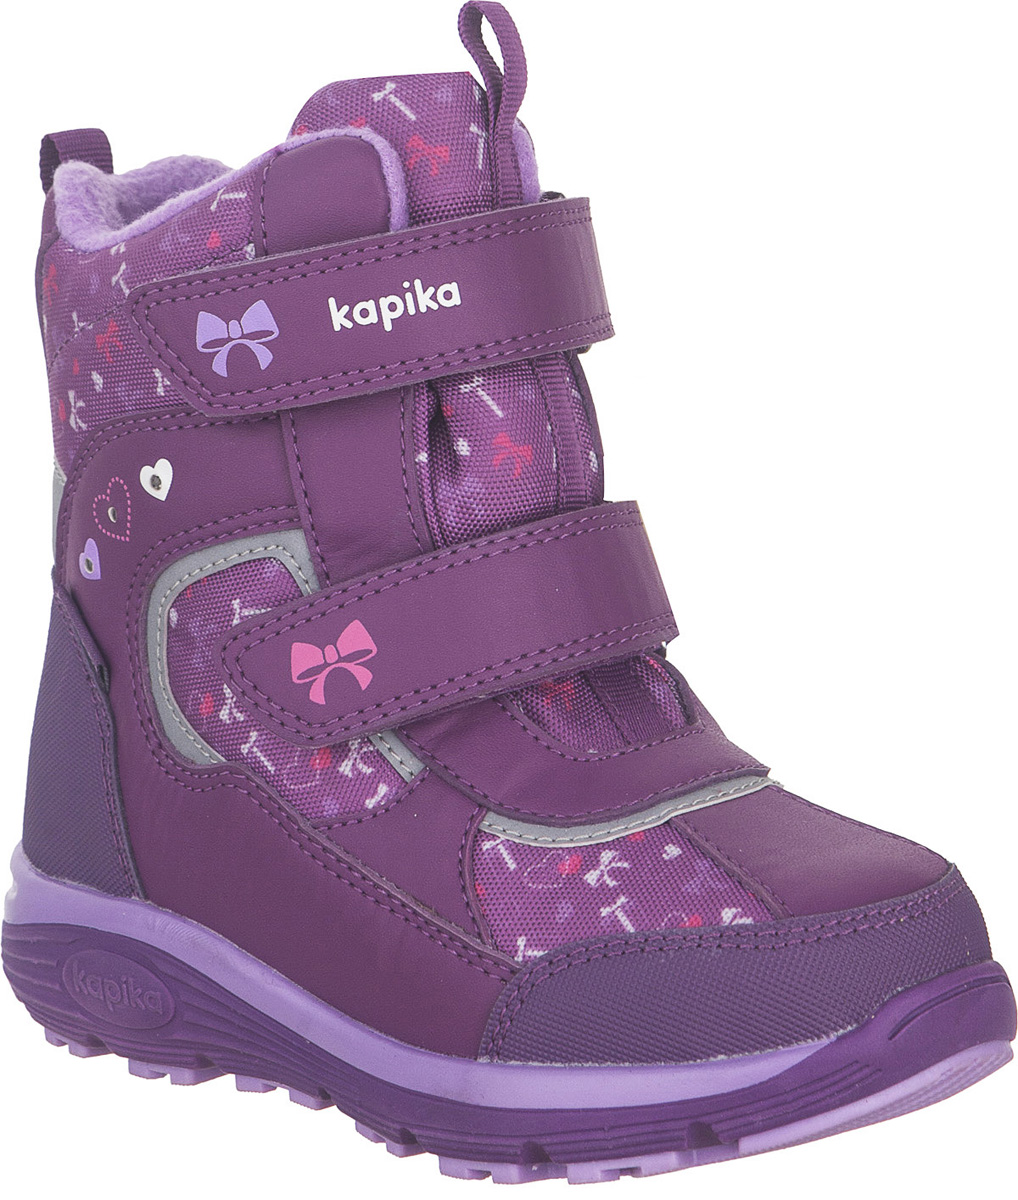 Ботинки для девочки Kapika KapiTEX, цвет: фиолетовый. 42258-2. Размер 28